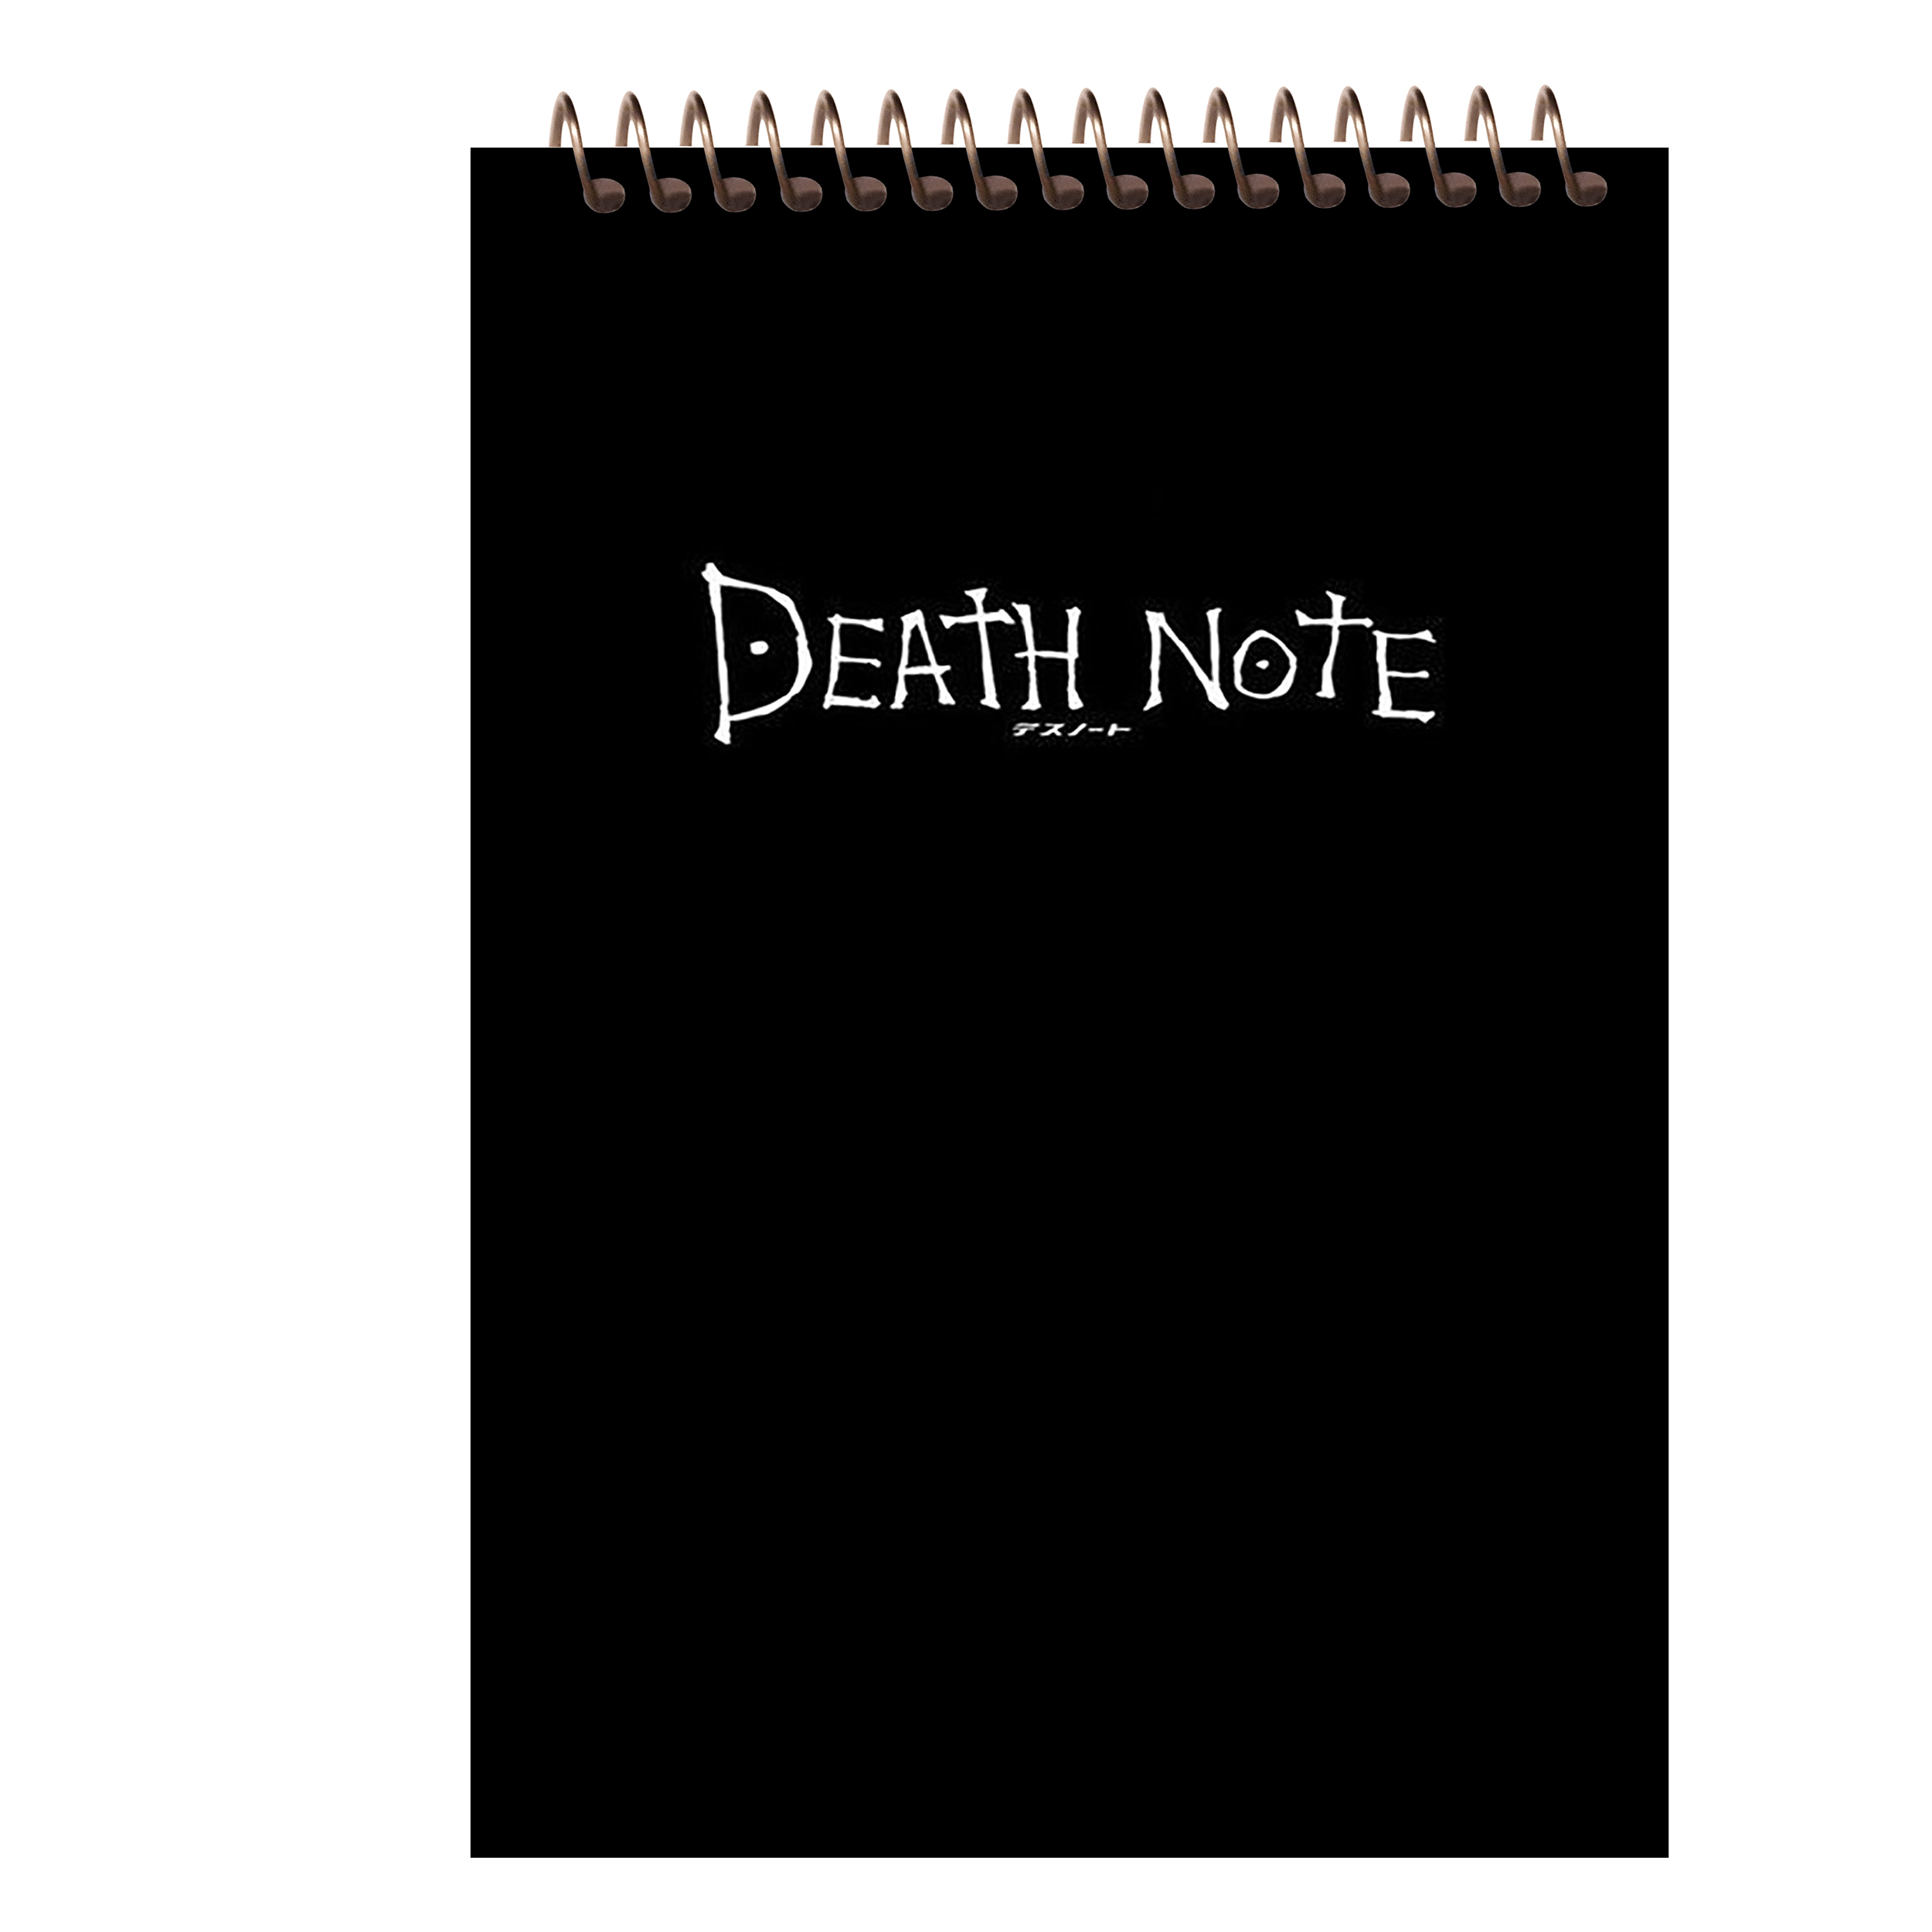 دفتر یادداشت مشایخ طرح انیمه دث نوت Death Note کد A23